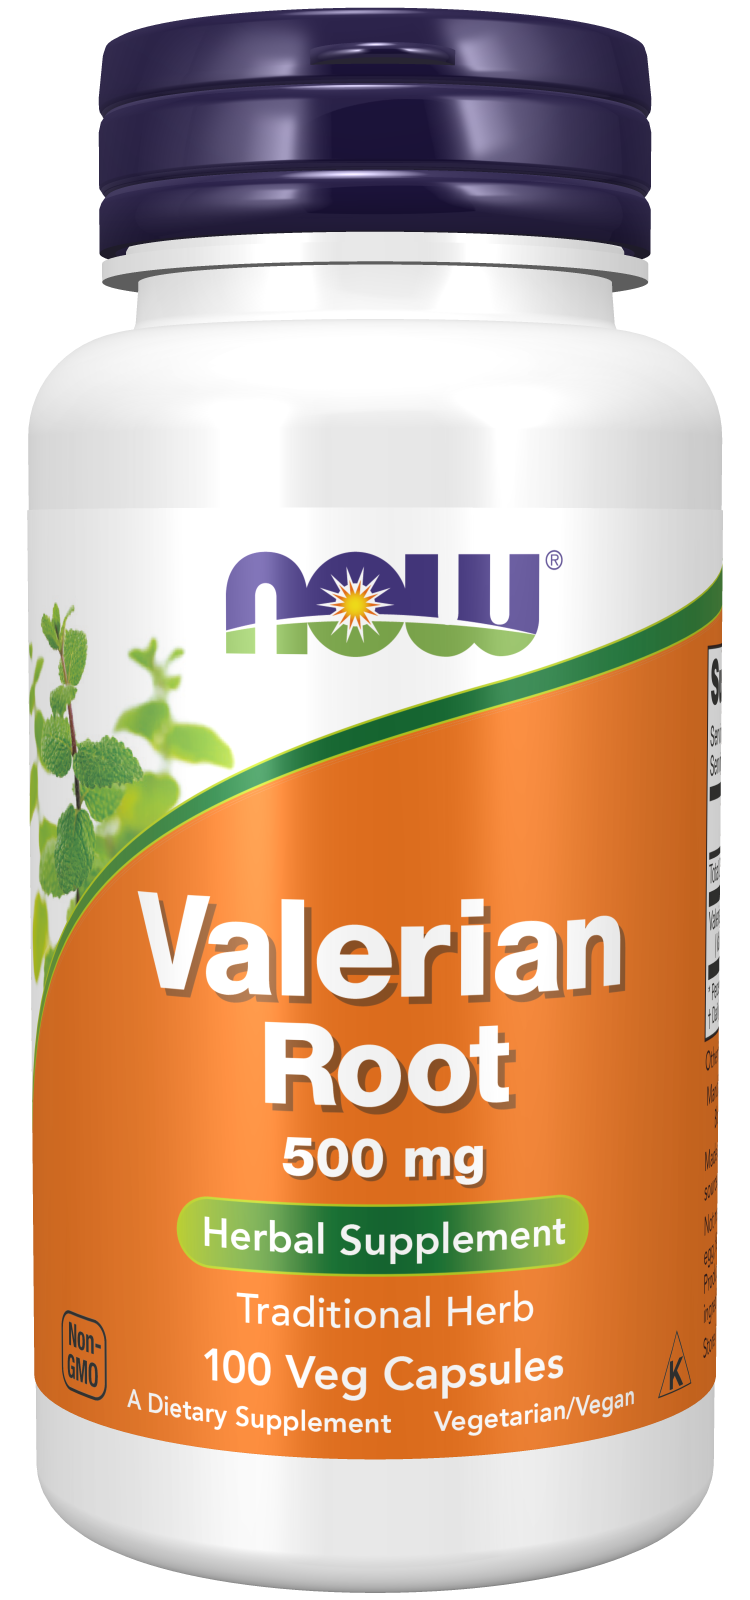 Valerian Root 500 mg Veg Capsules Bottle Front